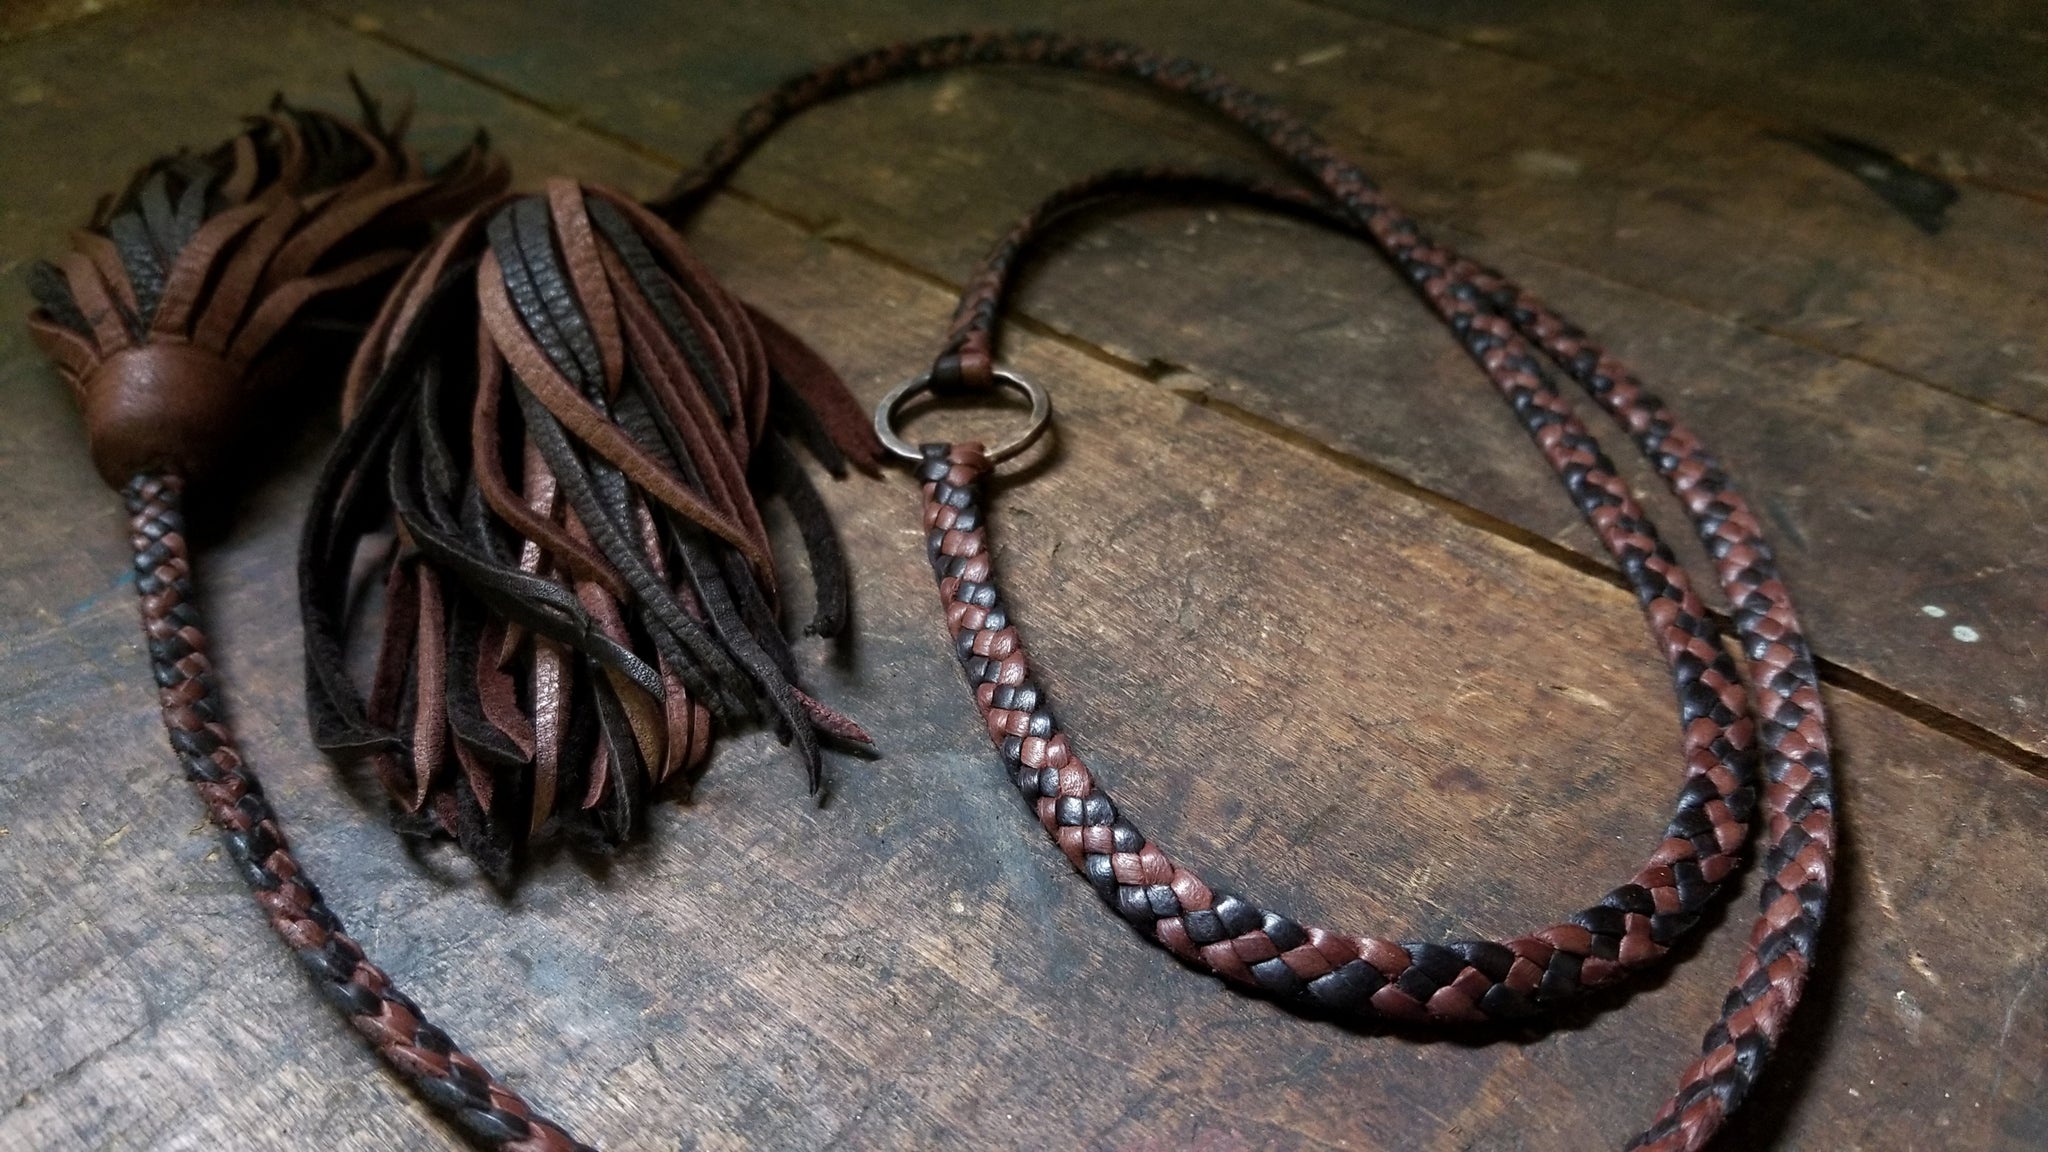 Zyanya Braided Leather Wrap Bracelet, Eternity Bracelet and Choker Necklace